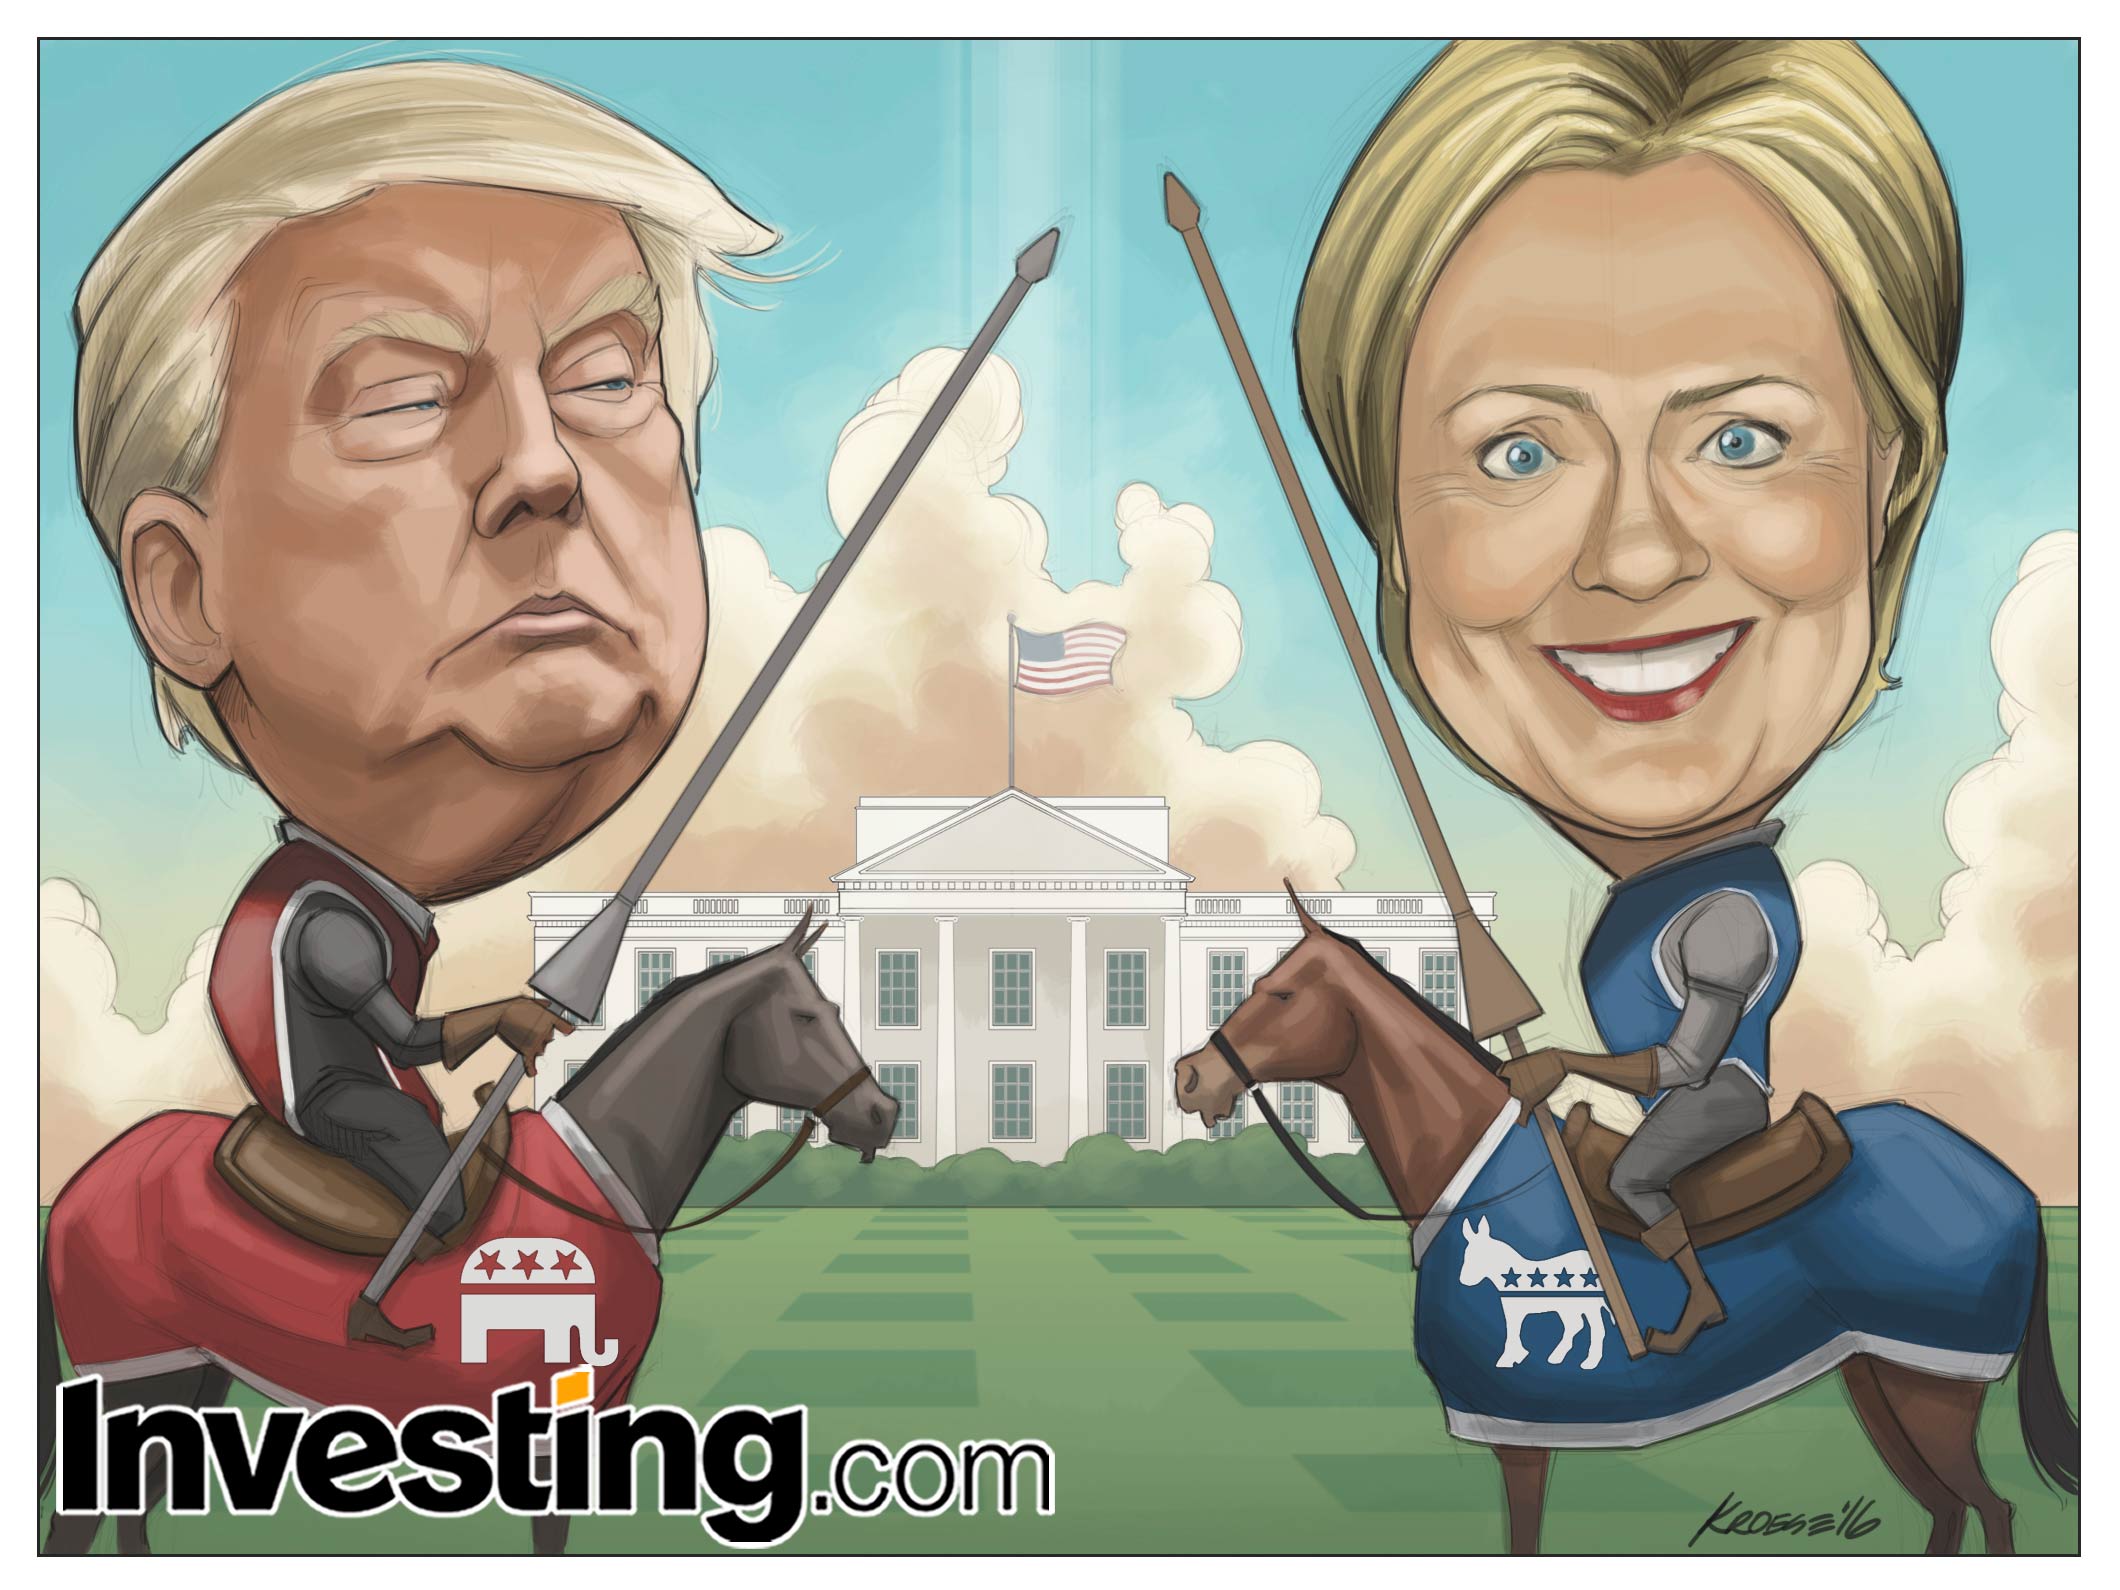 La corsa per la presidenza degli Stati Uniti è iniziata. Trump contro Hillary - chi sarà il vincitore?